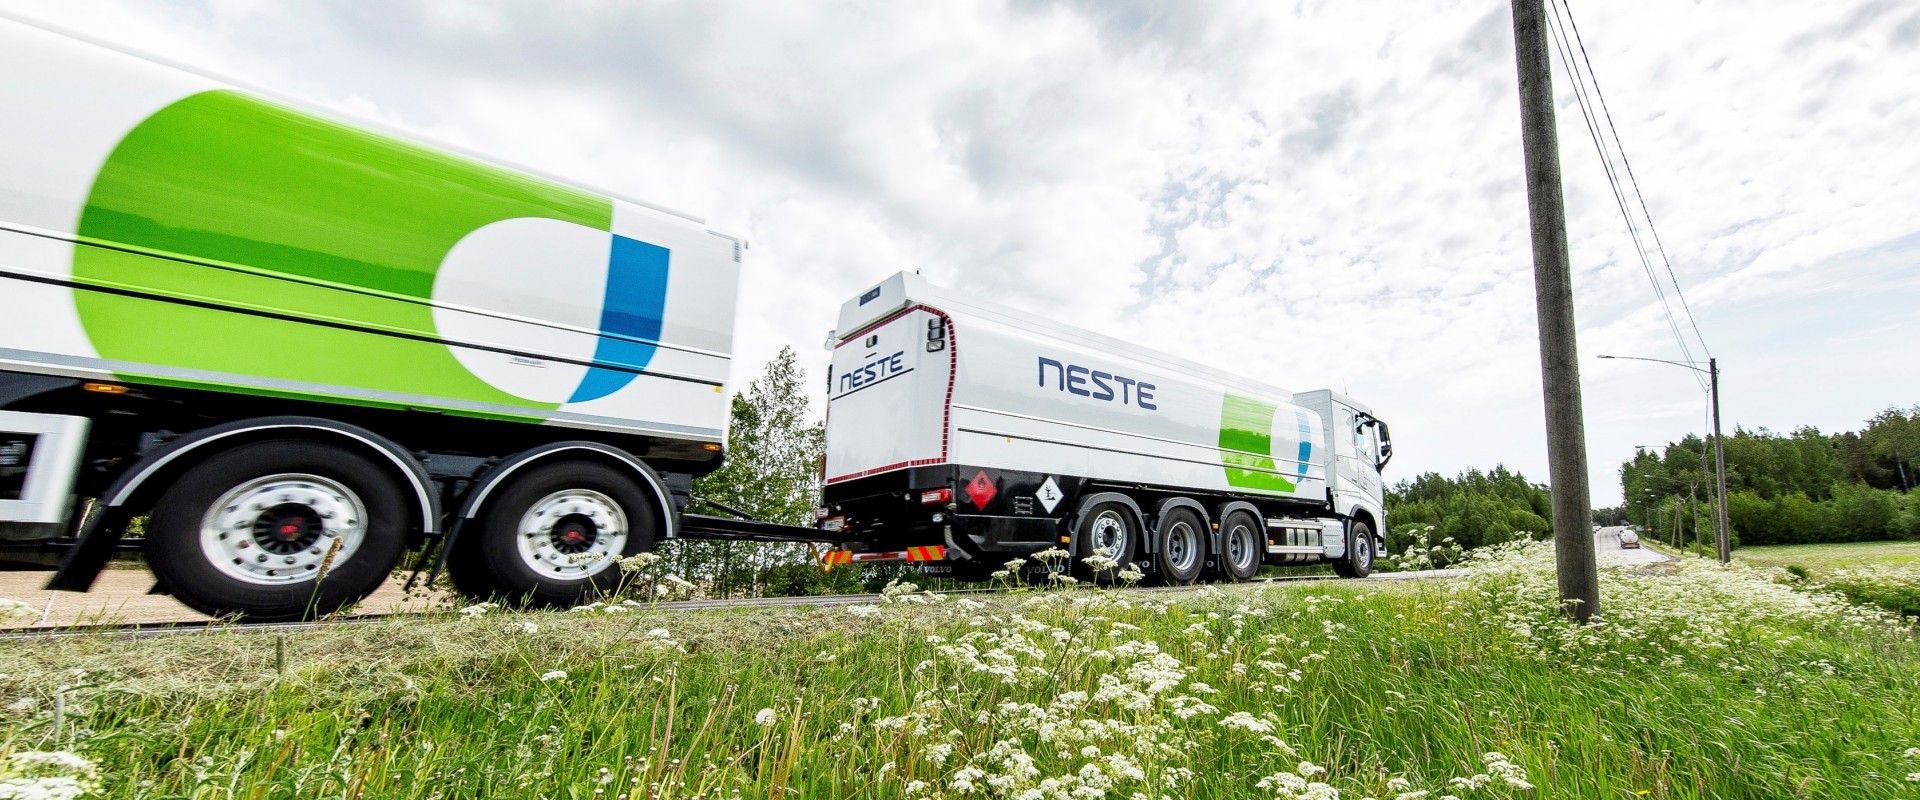 Neste_truck